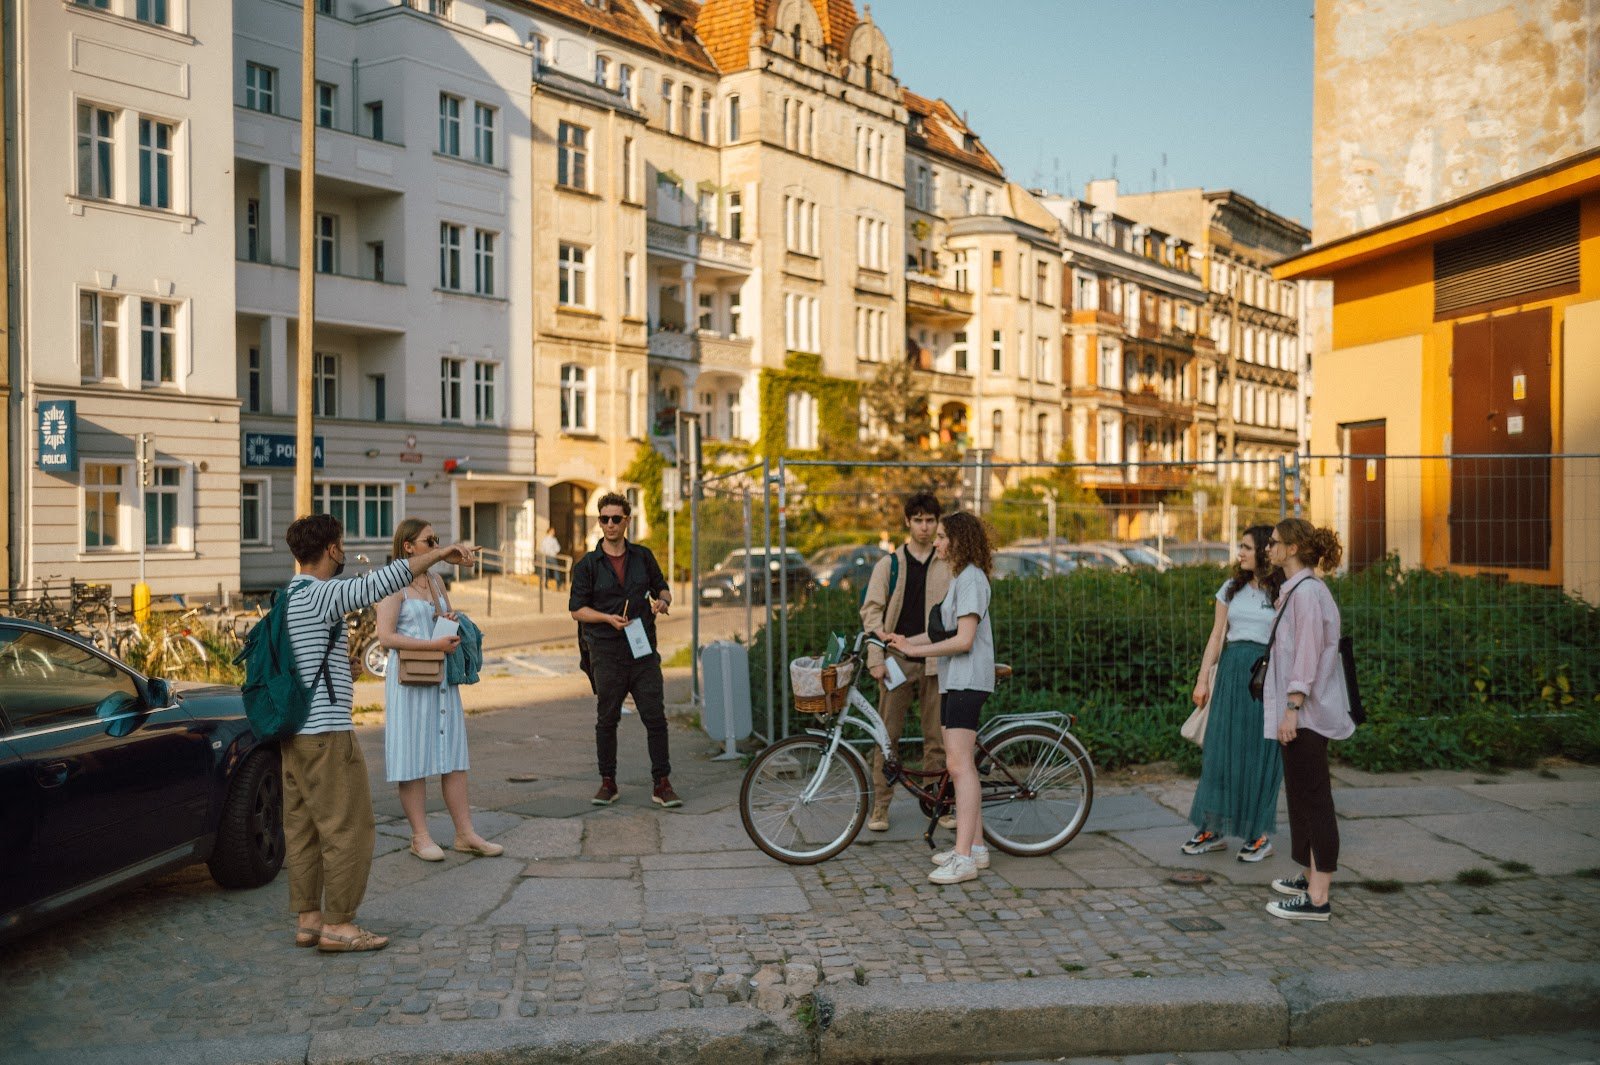 Grupa młodych ludzi stoi na chodniku i rozmawia. Jedna z osób trzyma rower, druga wskazuje ręką obiekt poza kadrem. 